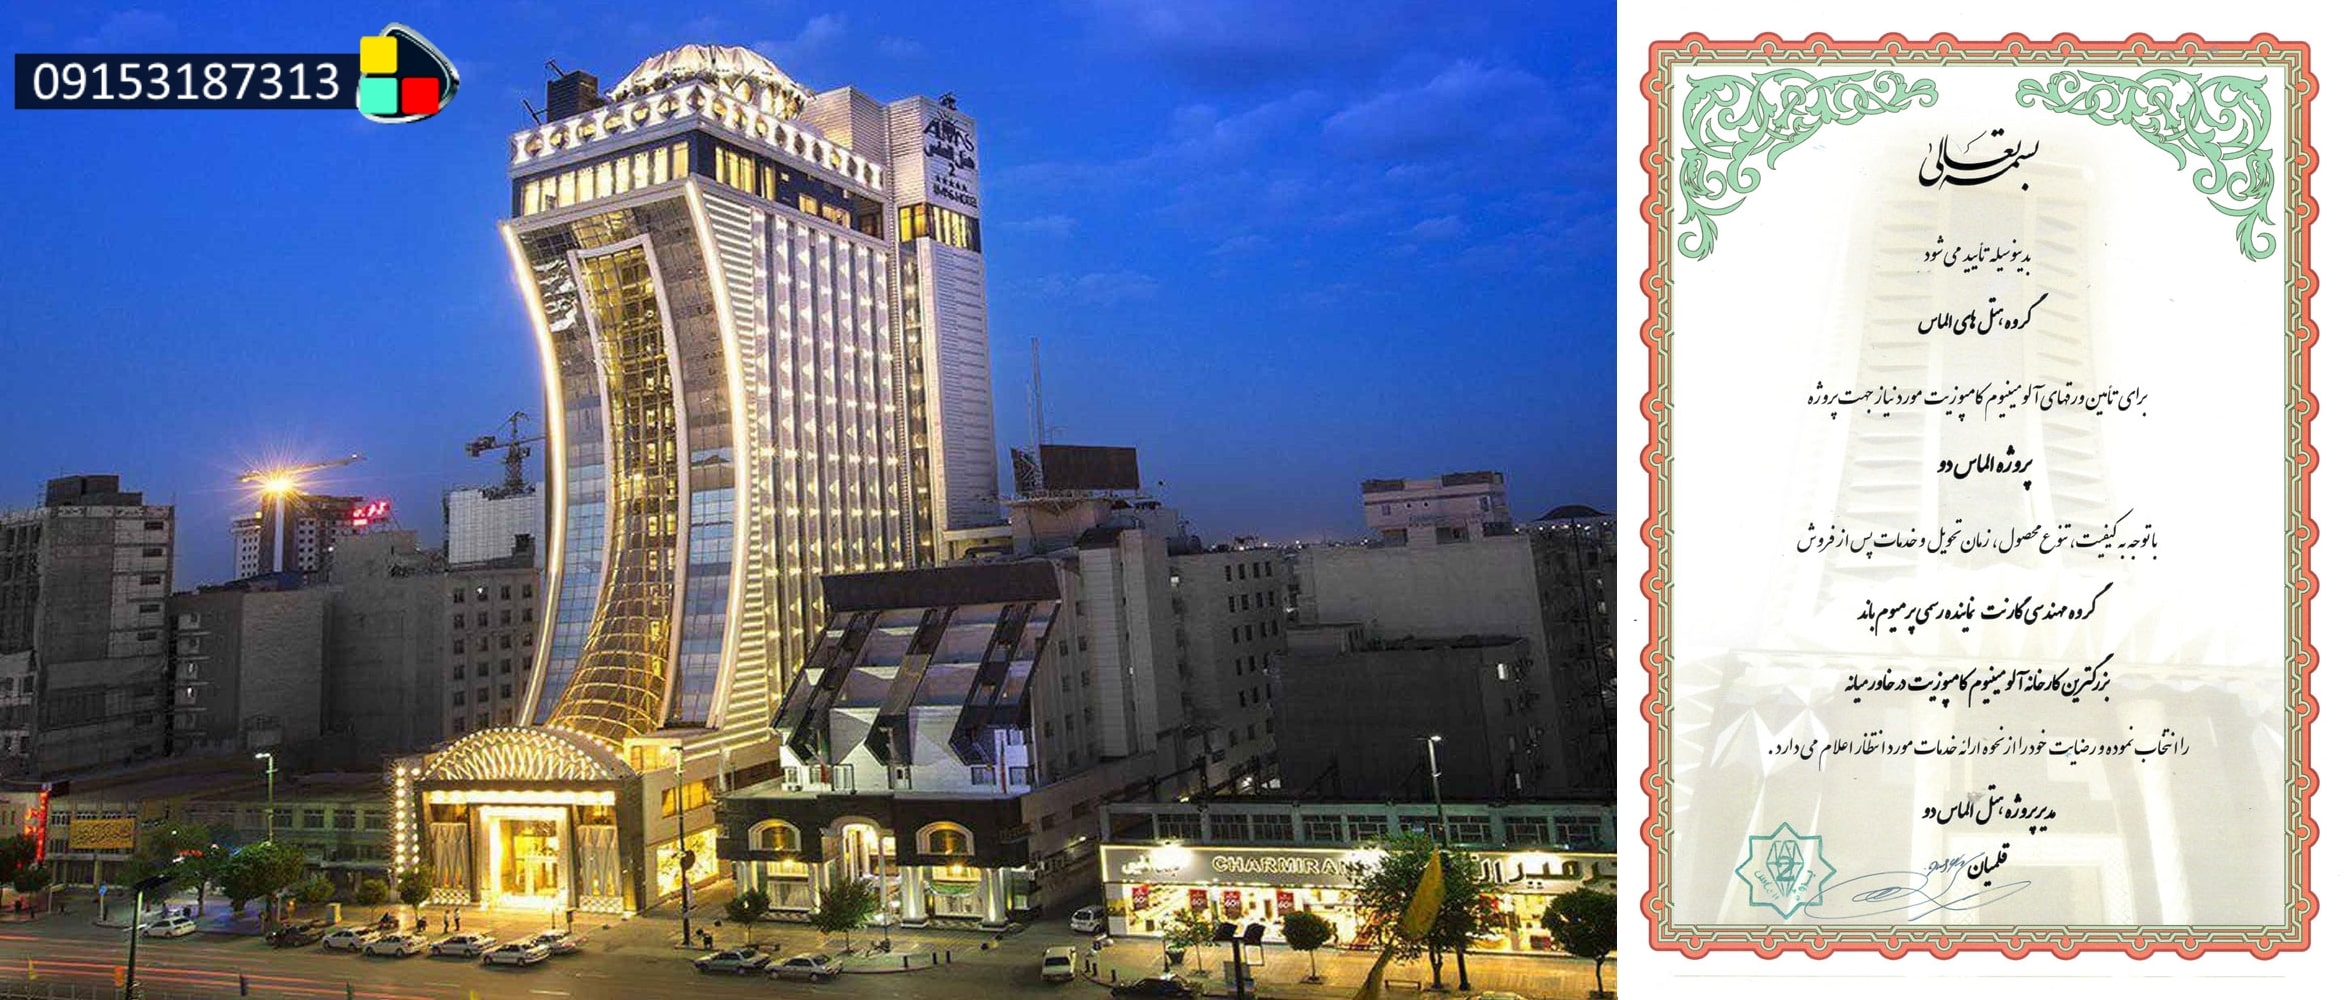 پروژه هتل الماس 2 توسط شرکت گارنت بهترین نمایندگی فروش ورق کامپوزیت در مشهد